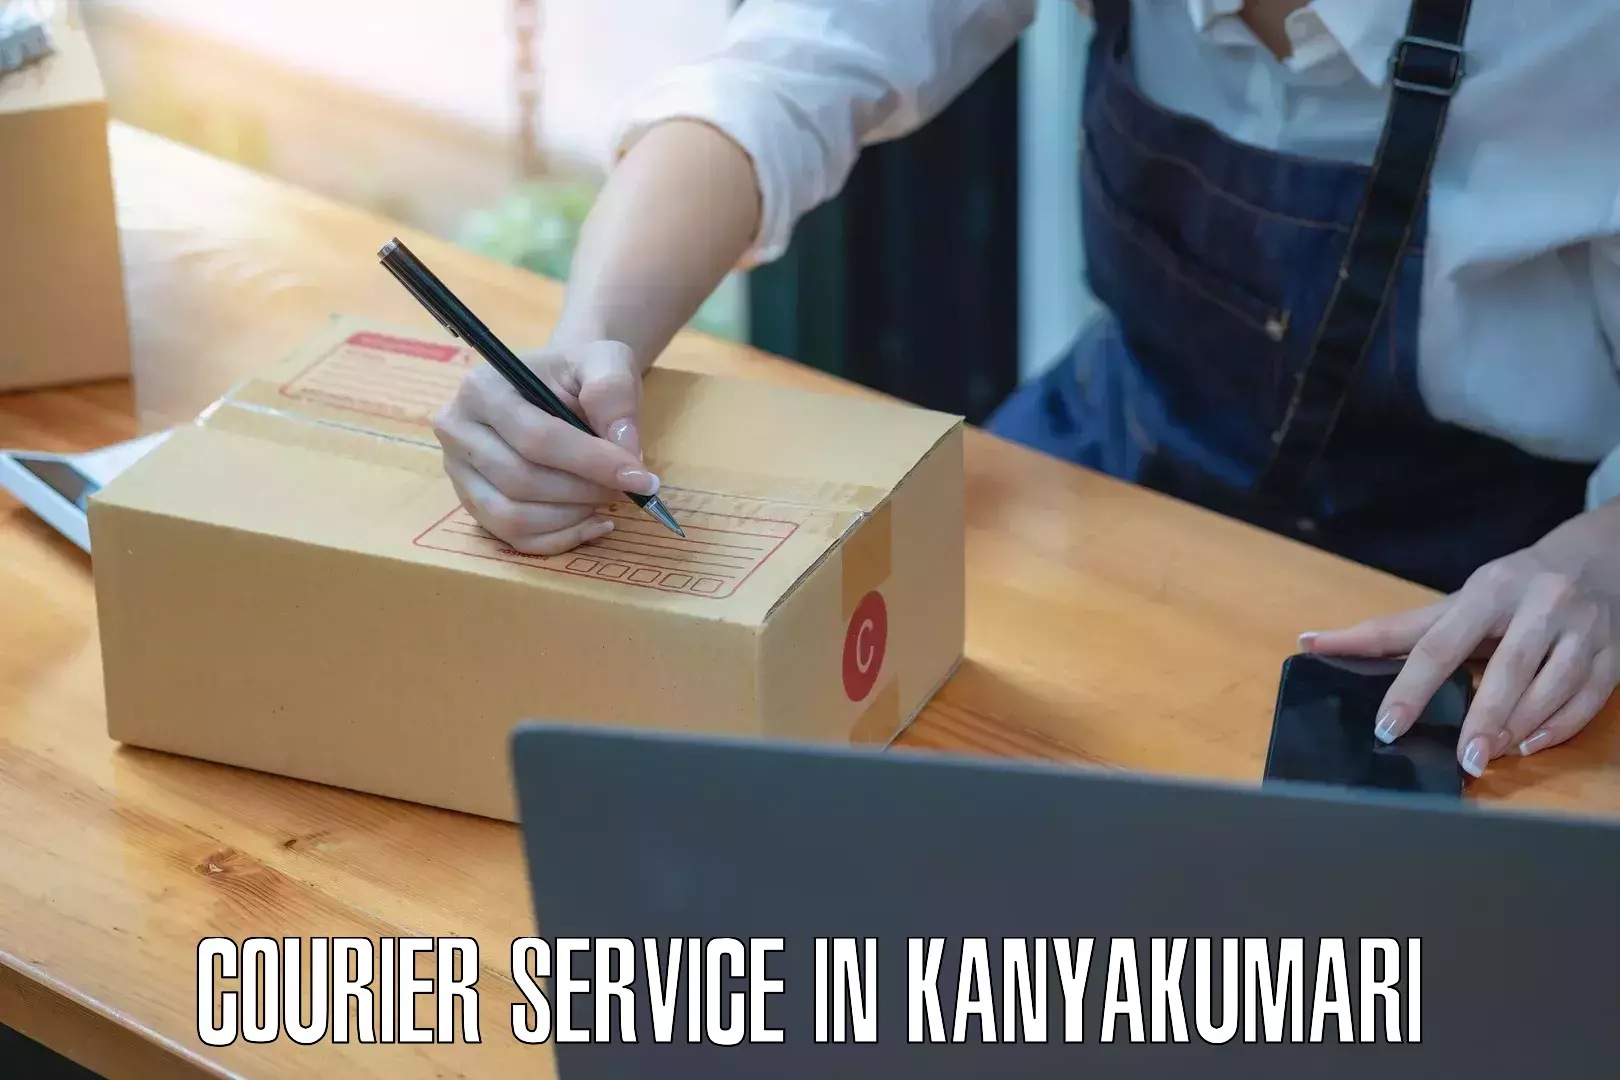 Versatile courier offerings in Kanyakumari